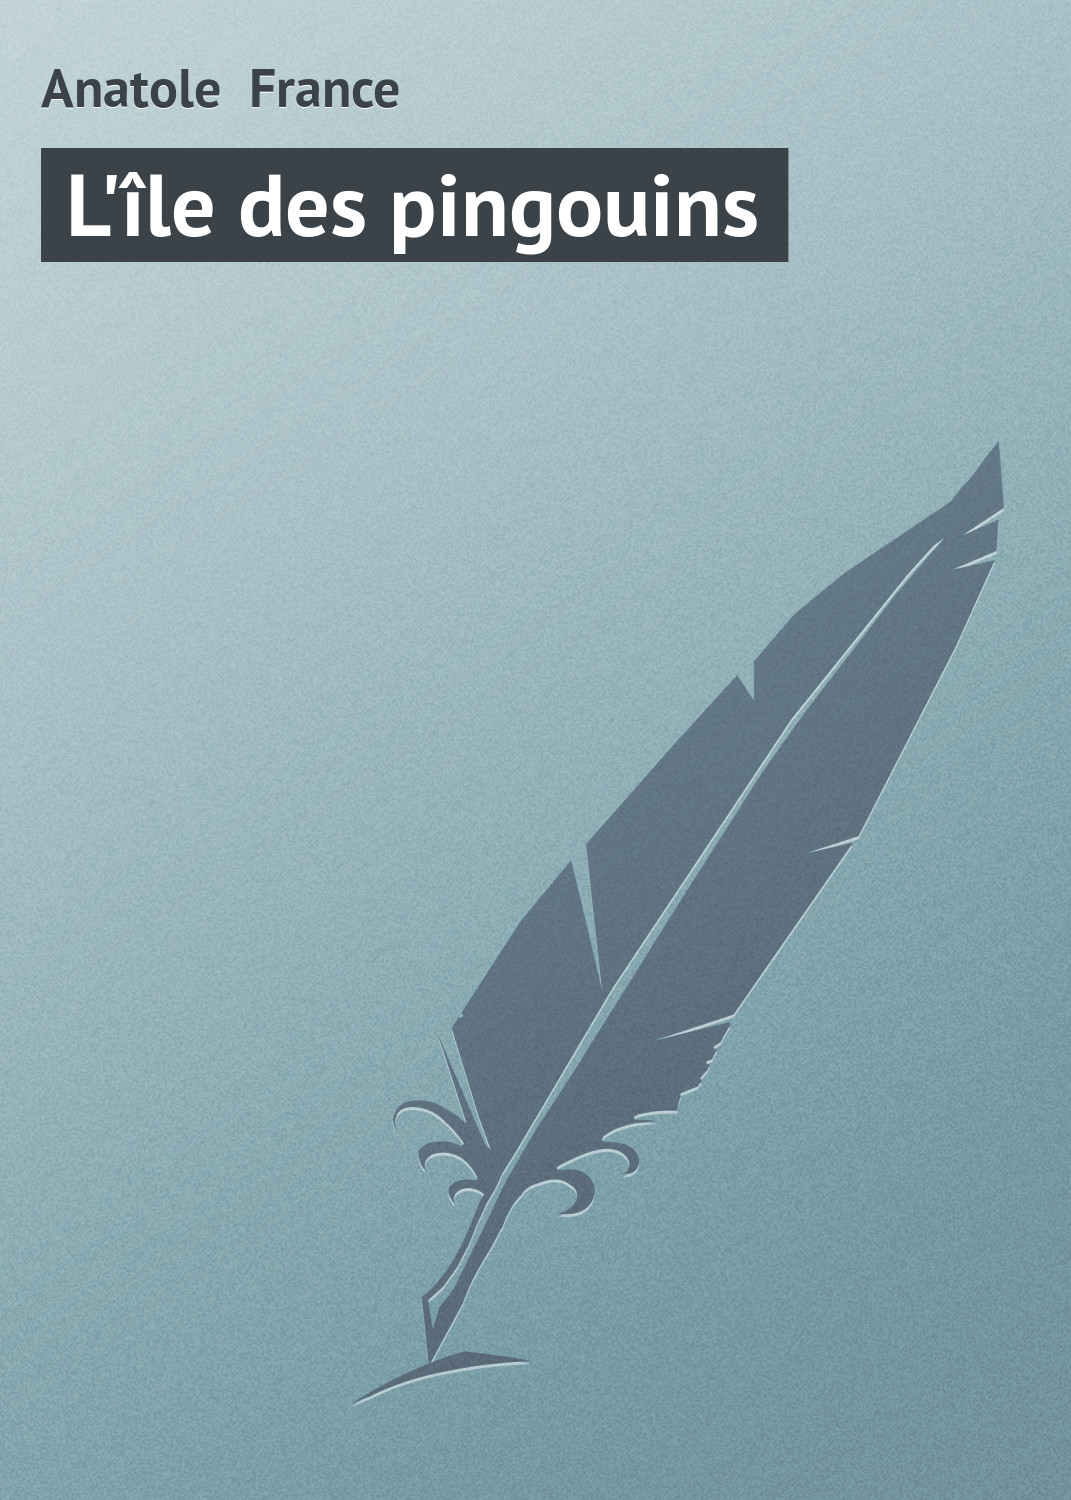 Книга L'île des pingouins из серии , созданная Anatole France, может относится к жанру Зарубежная старинная литература, Зарубежная классика. Стоимость электронной книги L'île des pingouins с идентификатором 21104406 составляет 5.99 руб.